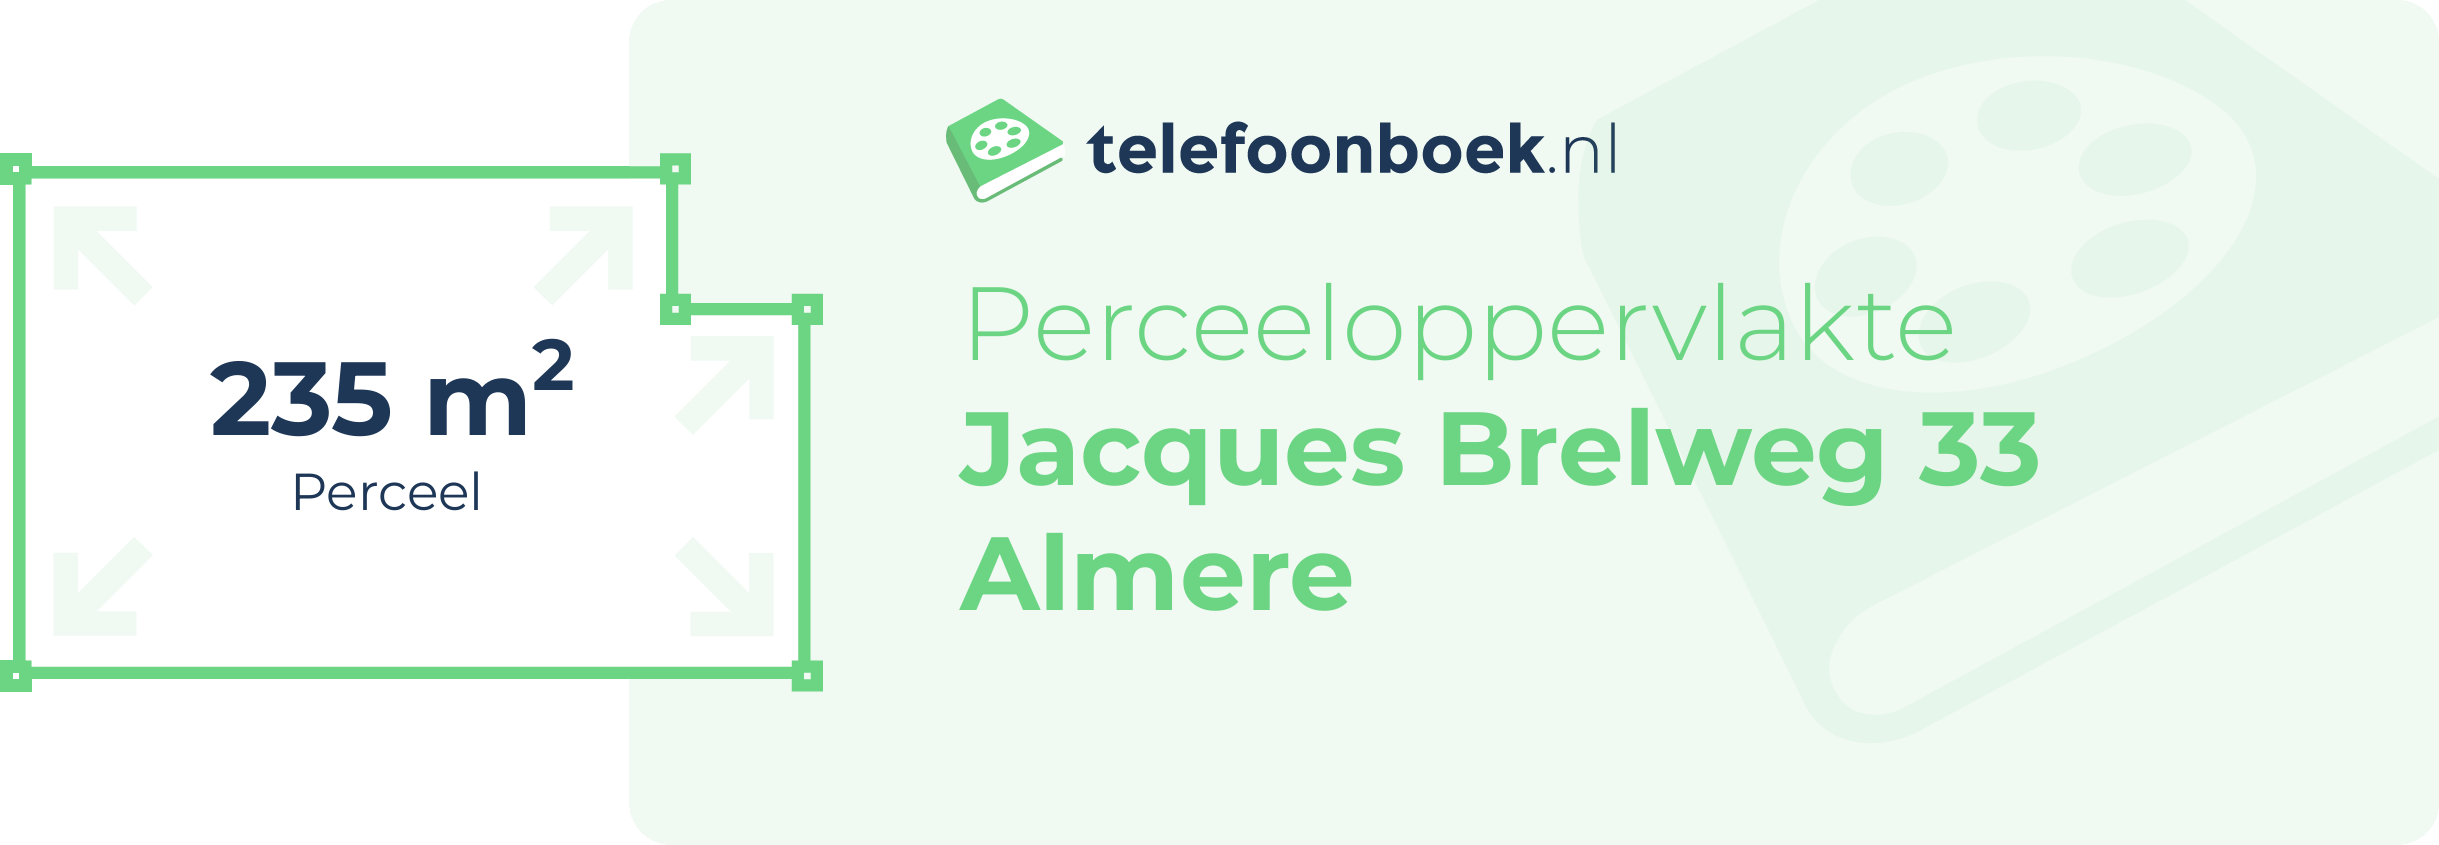 Perceeloppervlakte Jacques Brelweg 33 Almere